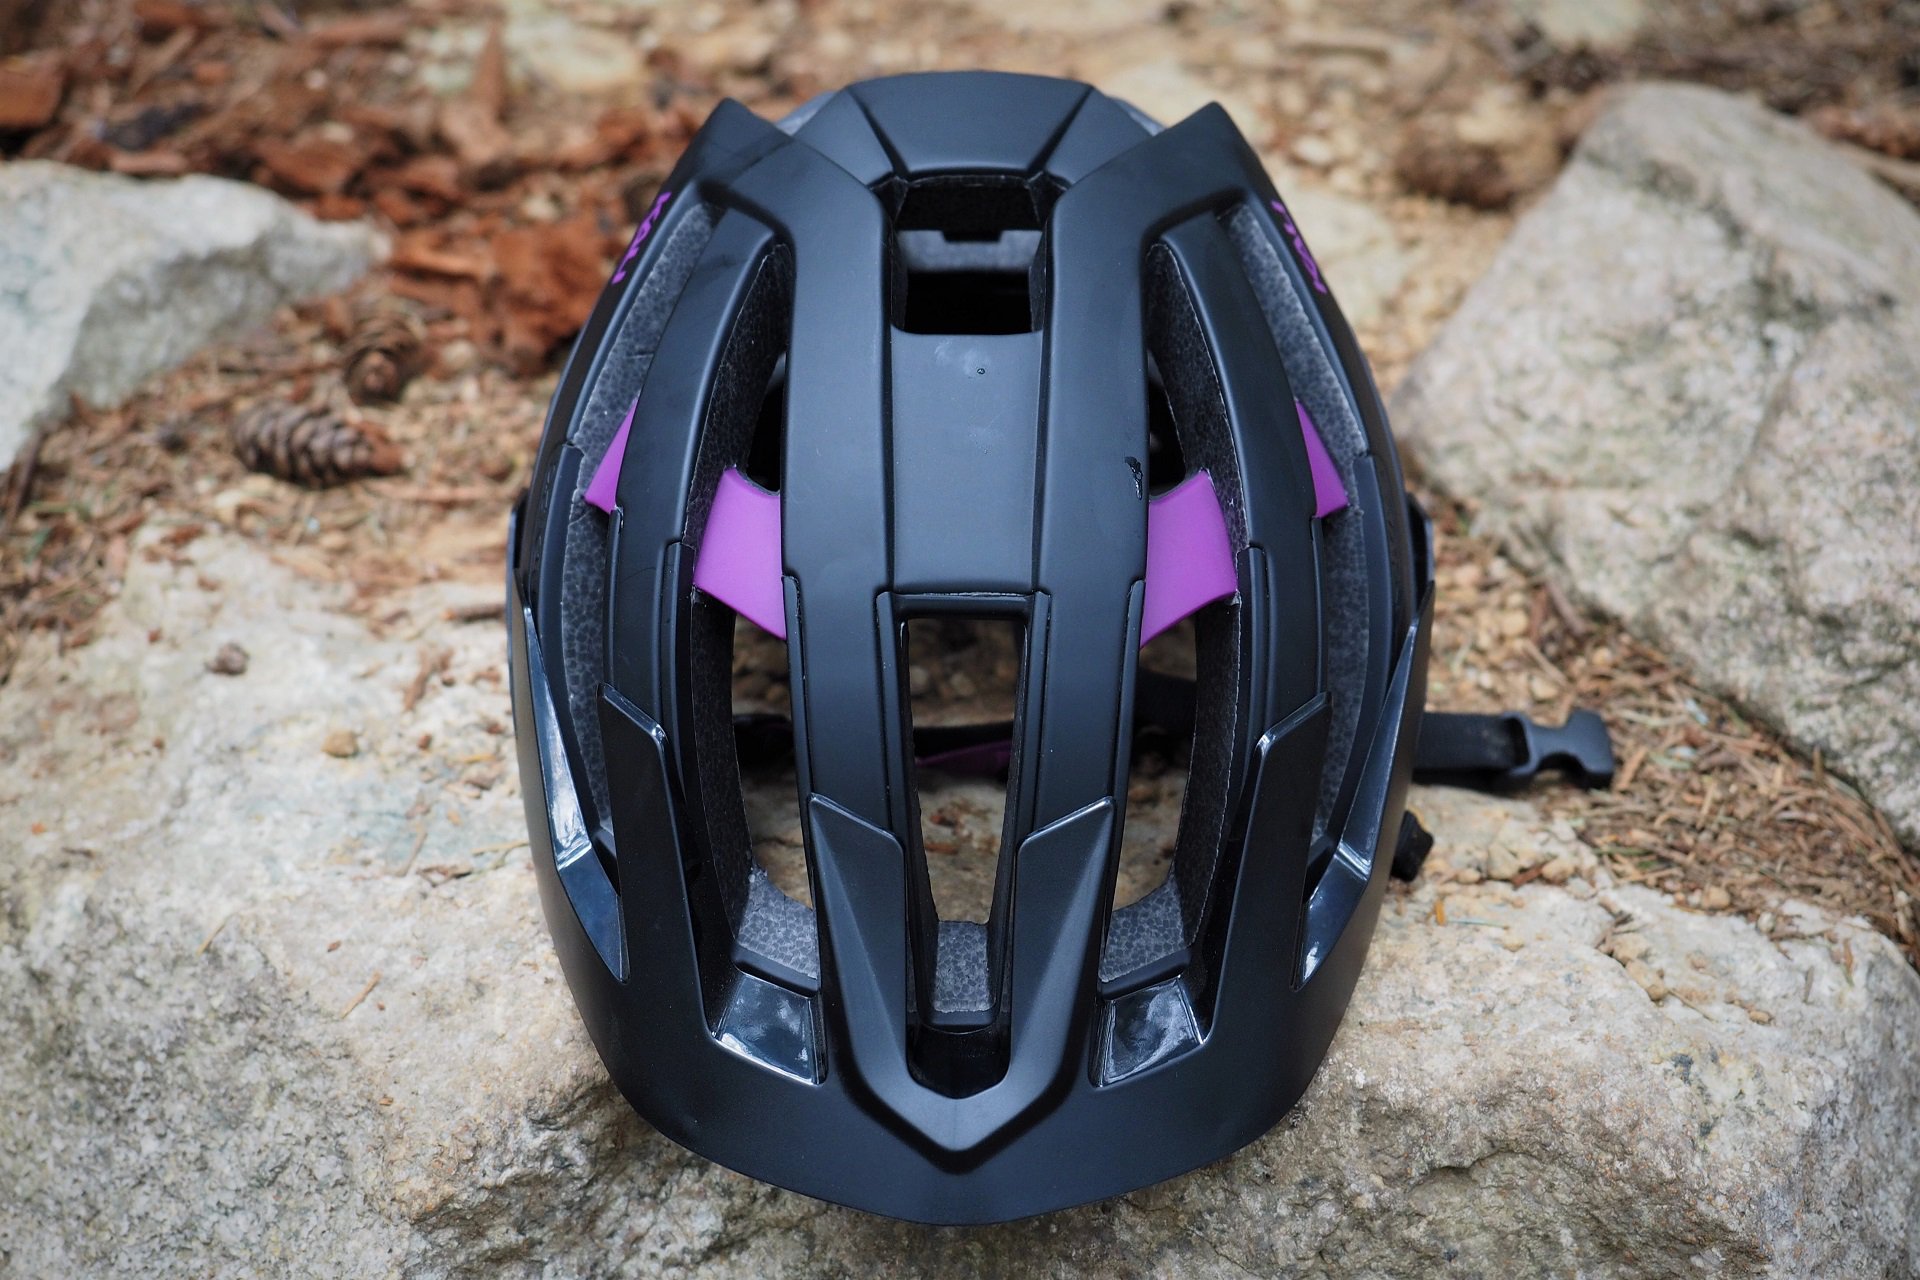 Kali Interceptor Helmet Reviewed